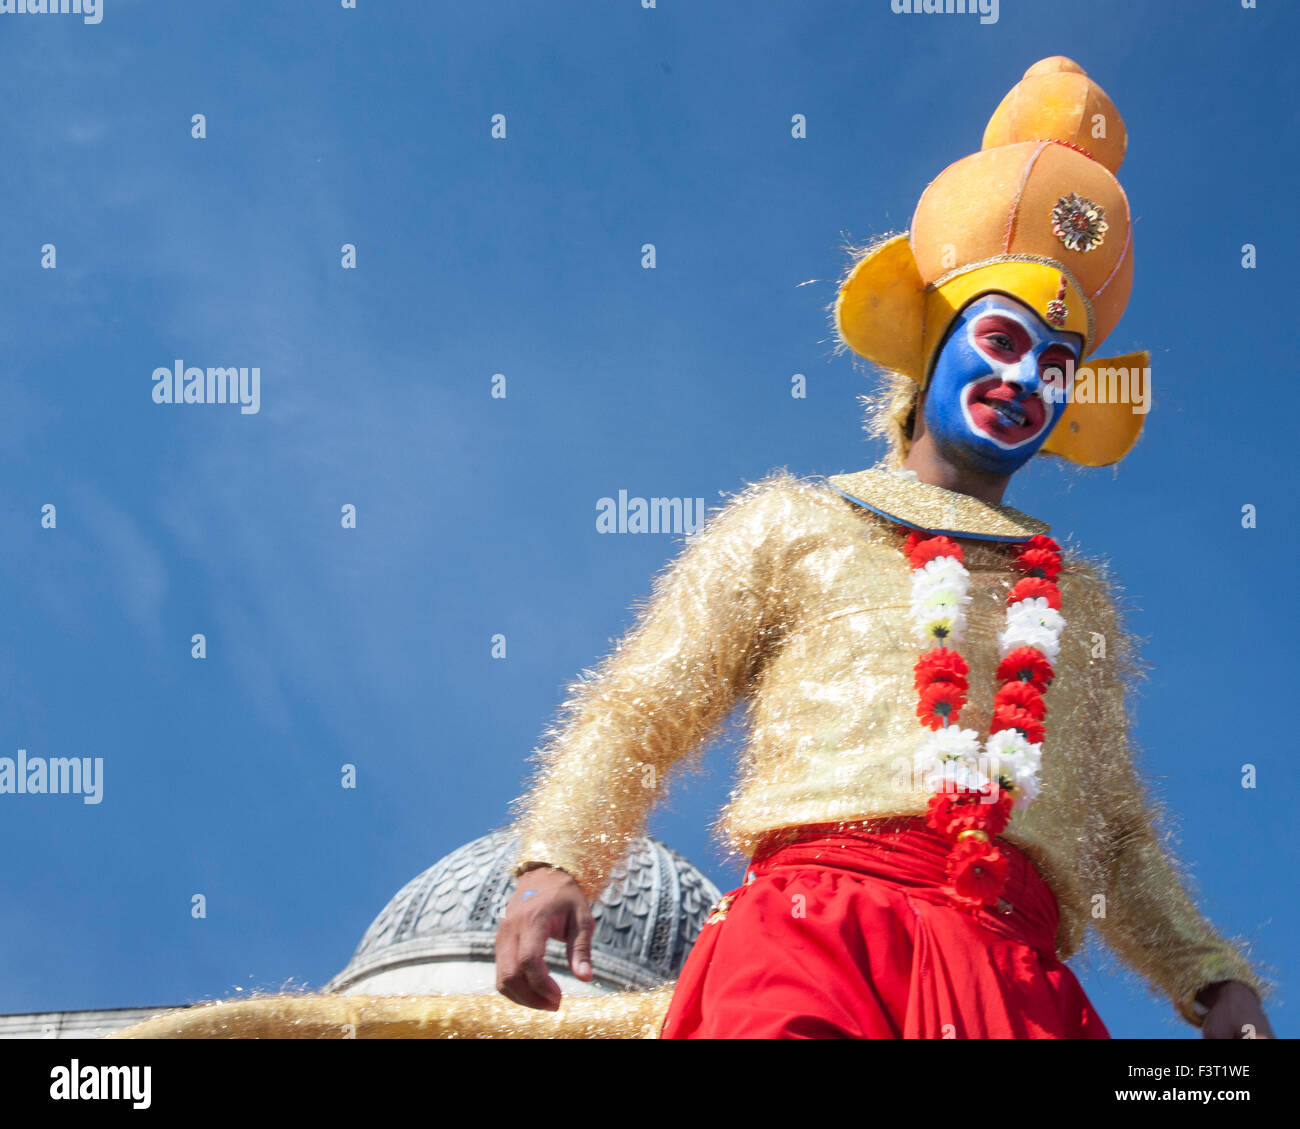 Londra, Regno Unito. 11 ottobre, 2015. Diwali, Indian Festival Culturale di luce e di gioia, Trafalgar Square, City of Westminster, Londra, Inghilterra, Regno Unito. Credito: Adina Tovy/Alamy Live News Foto Stock